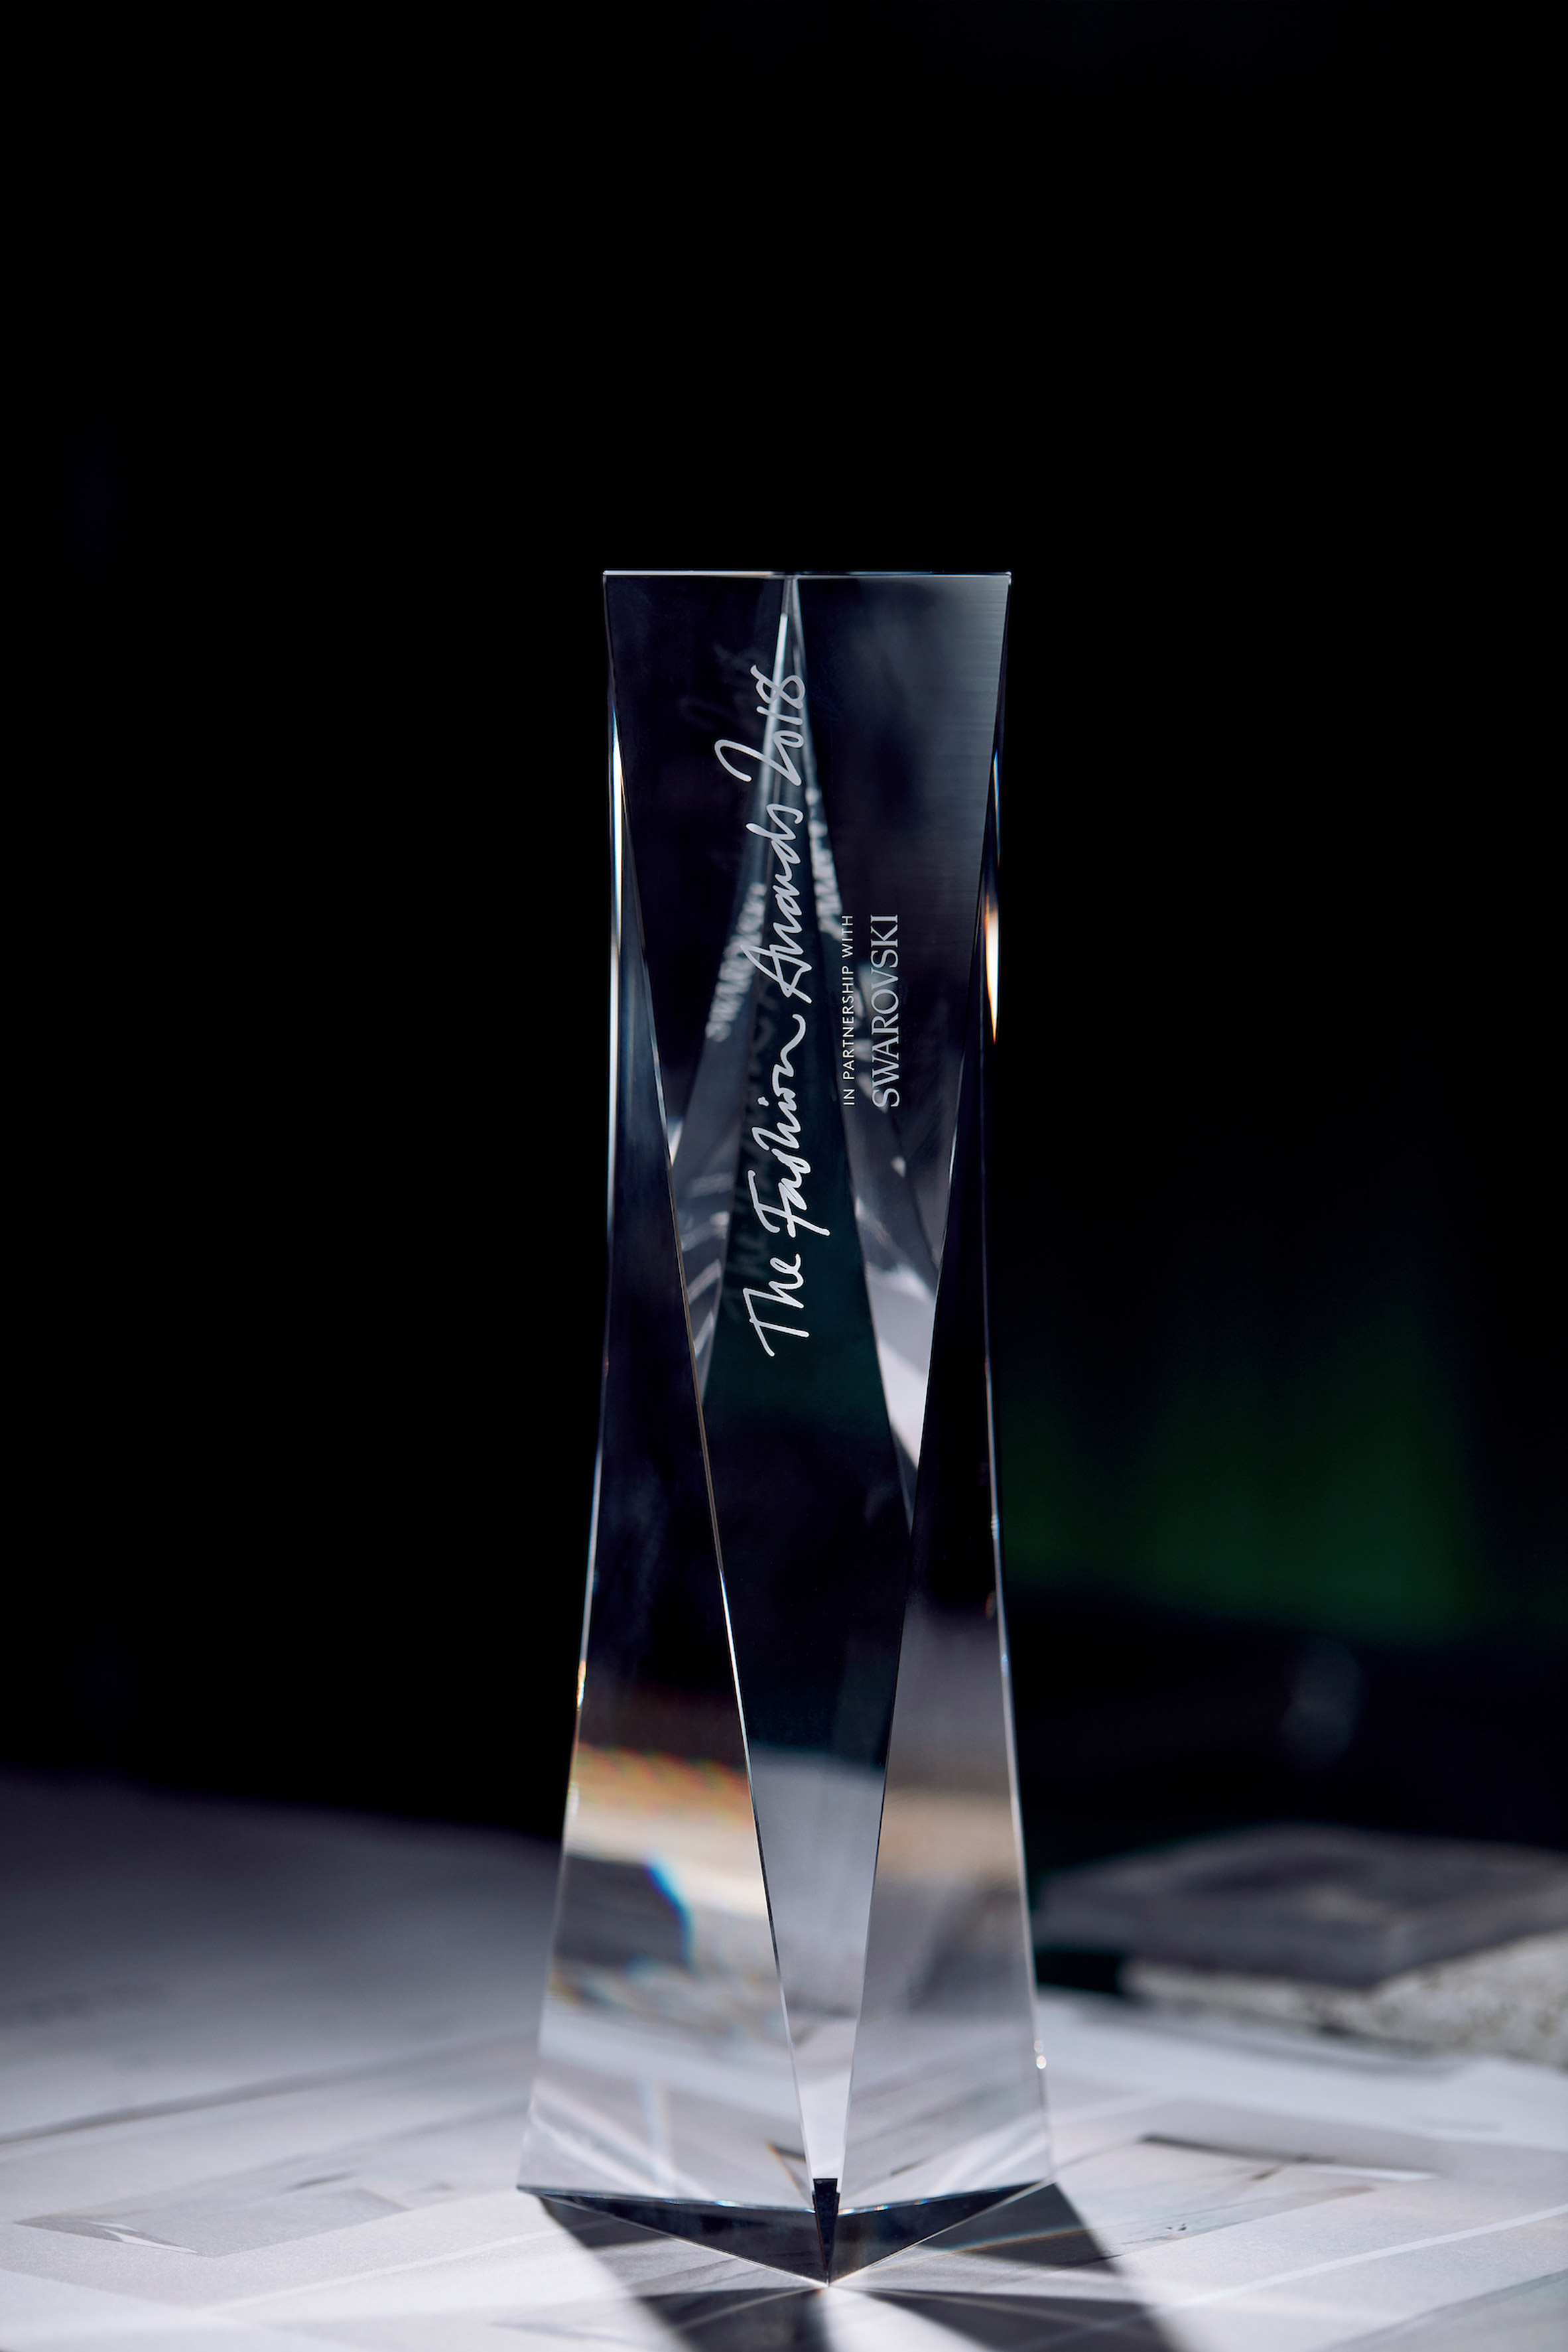 David Adjaye fashion award trophy